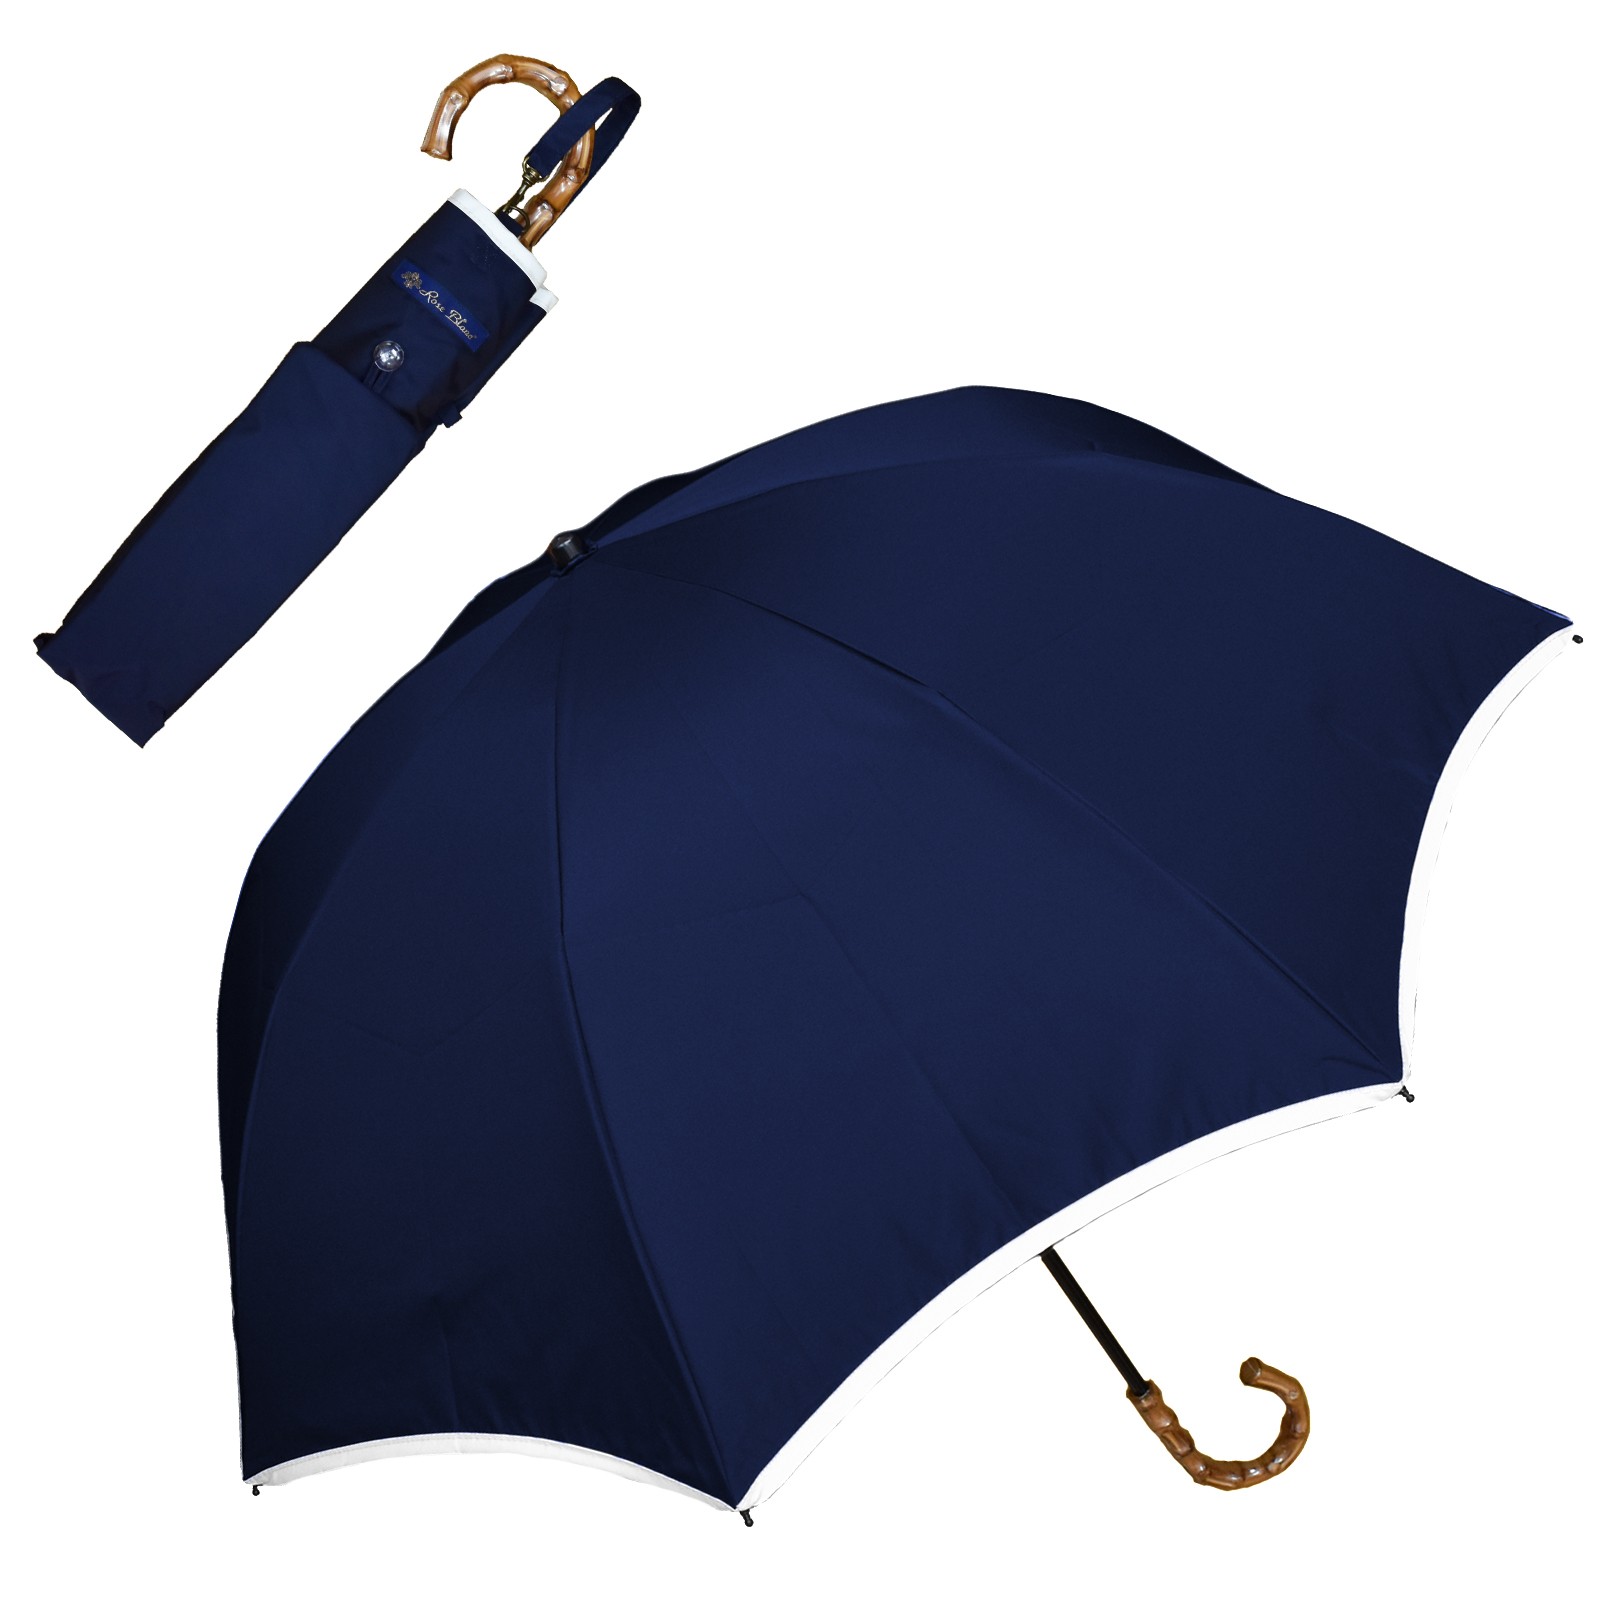 日傘 完全遮光 折りたたみ uv 晴雨兼用 軽量 2段 折りたたみ傘 100% おしゃれ パイピング...